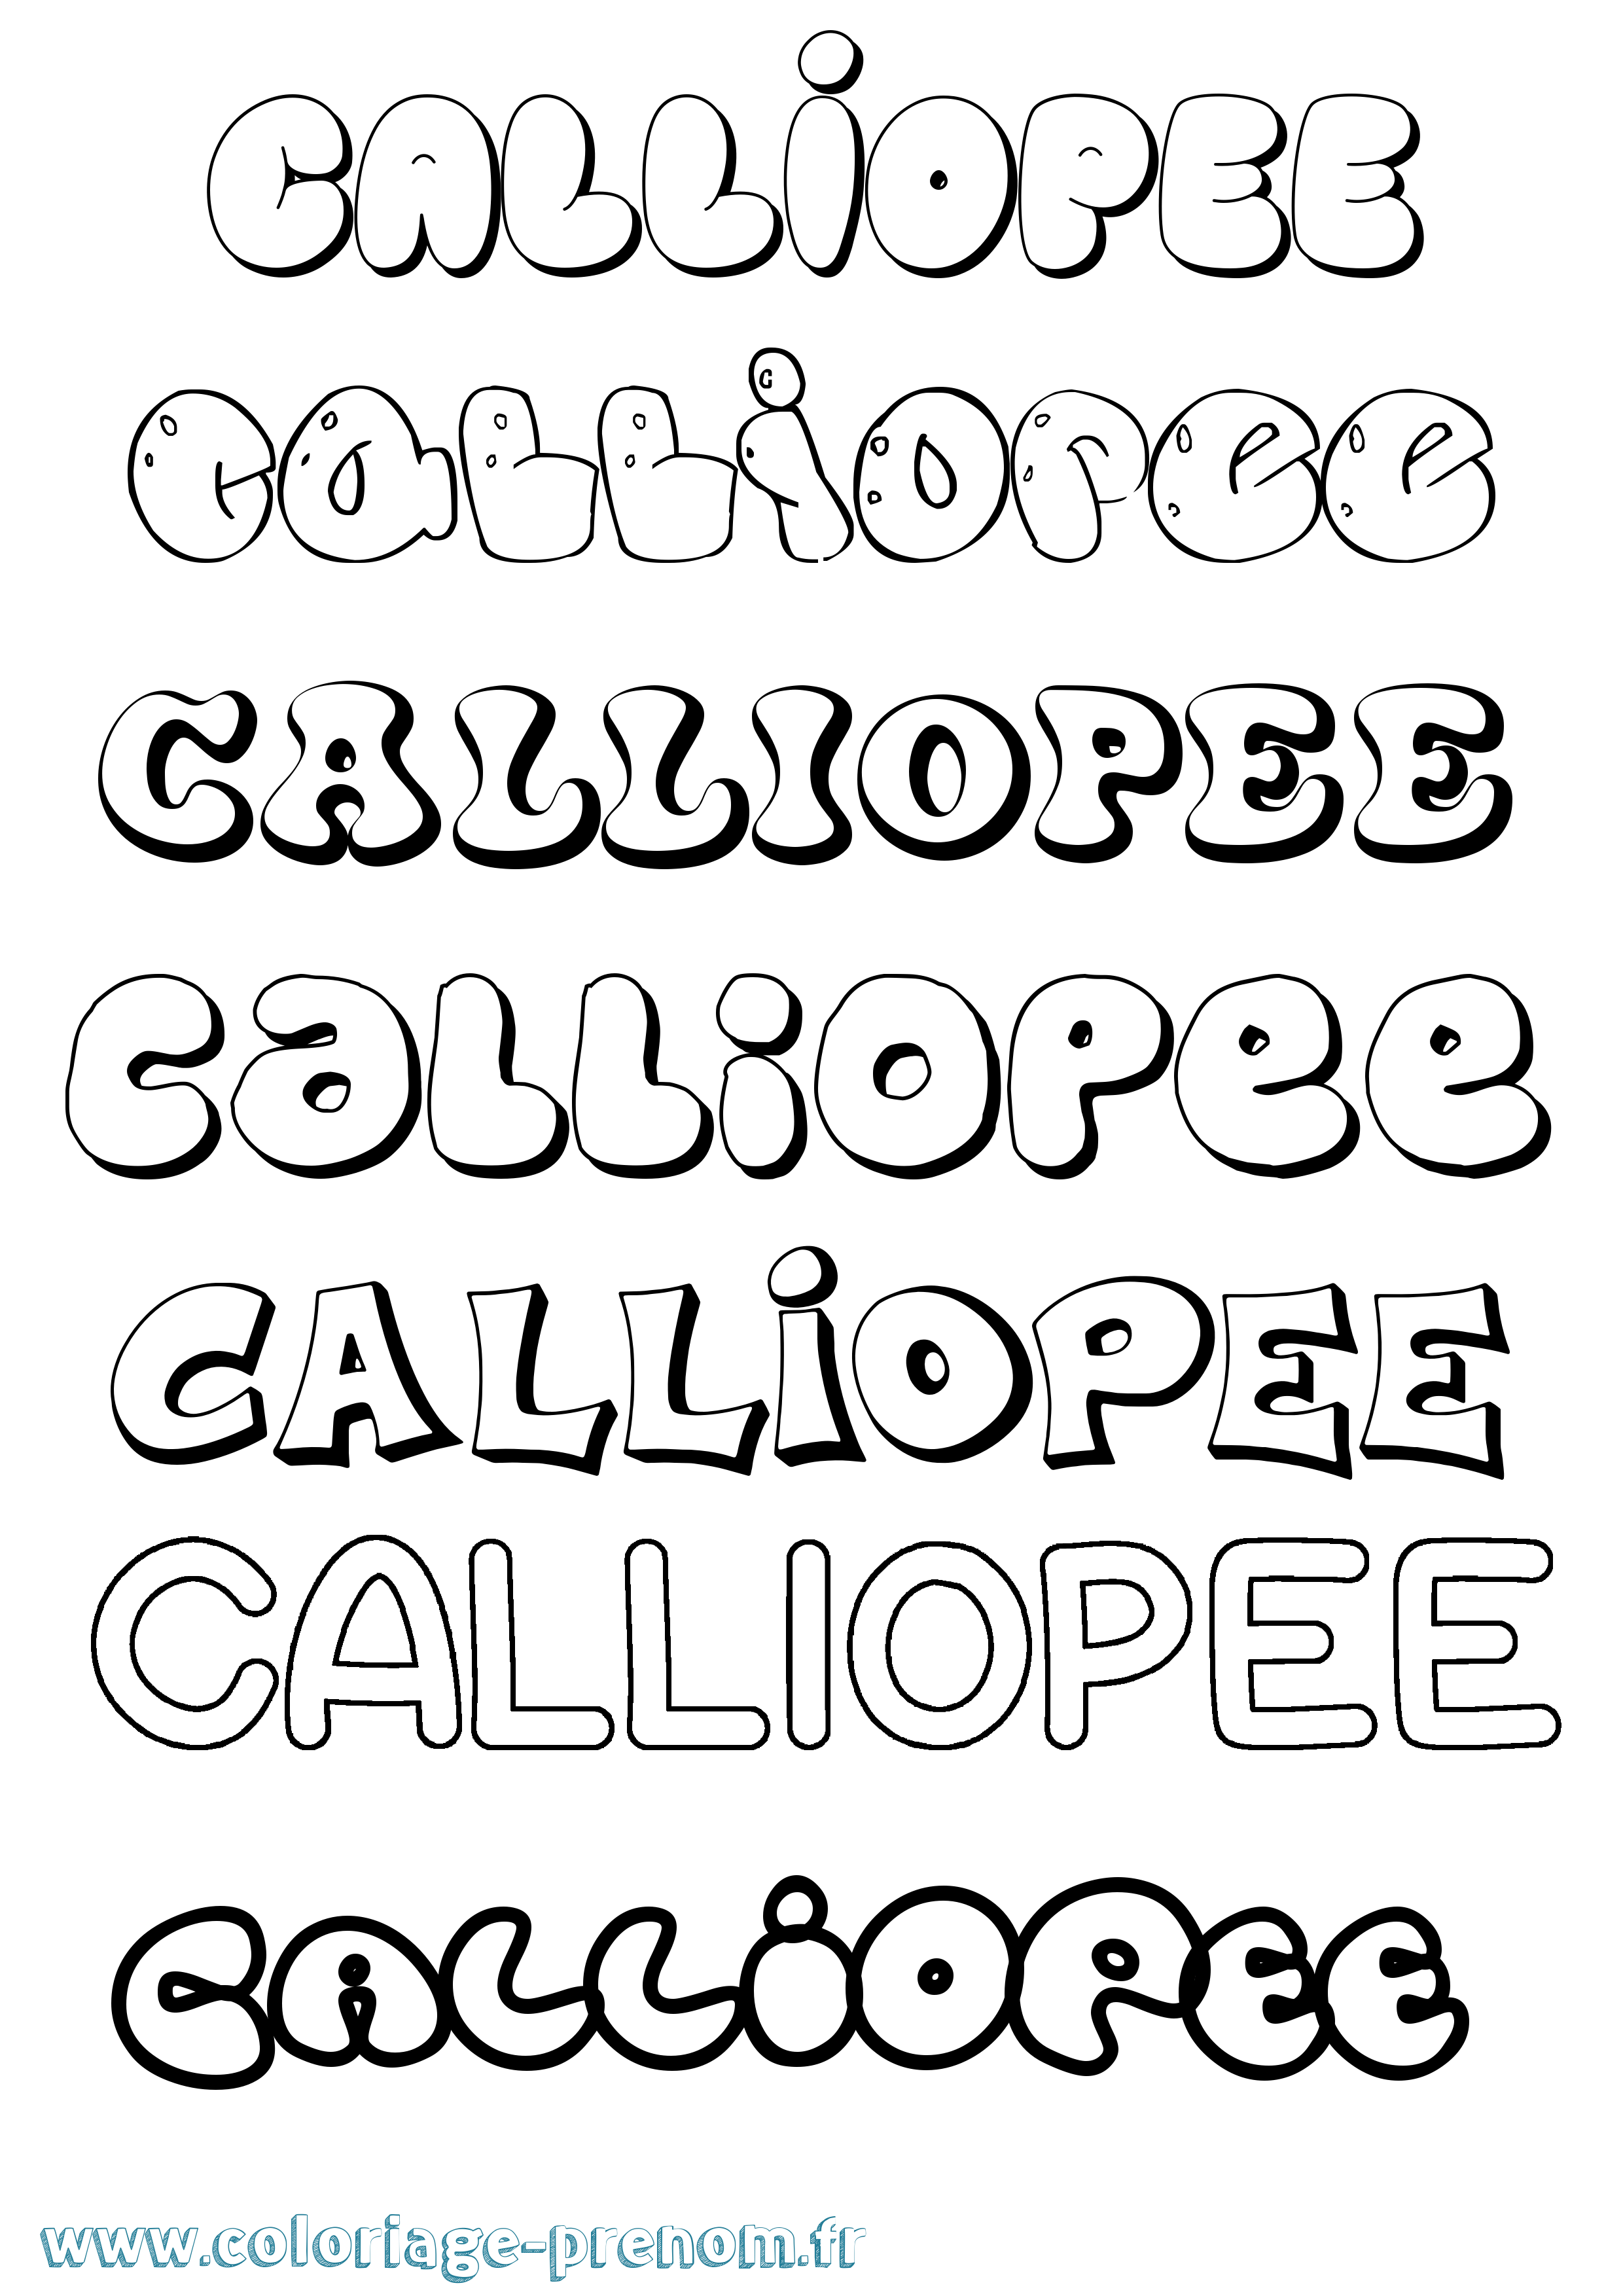 Coloriage prénom Calliopee Bubble